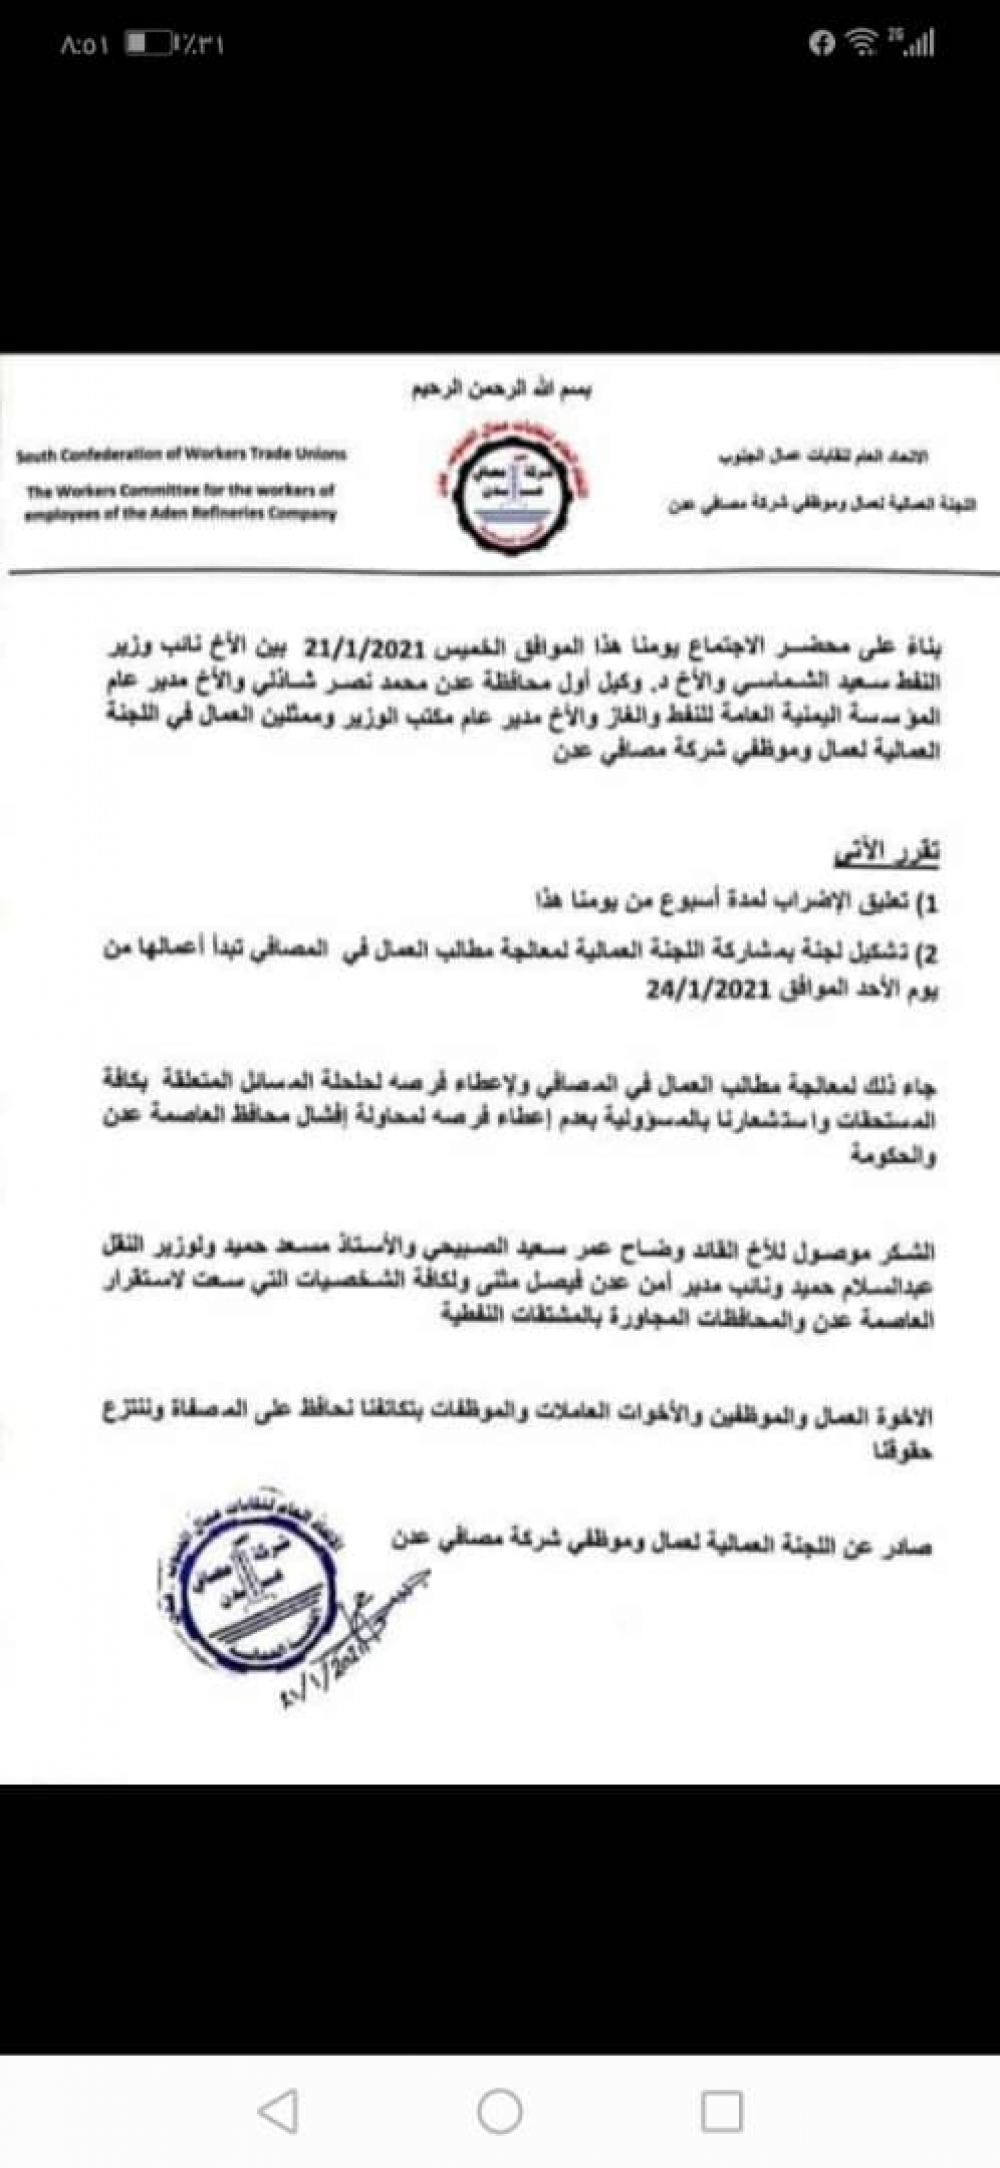 عمال مصافي عدن يعلقون إضرابهم وتشكيل لجنة لمعالجة مطالبهم